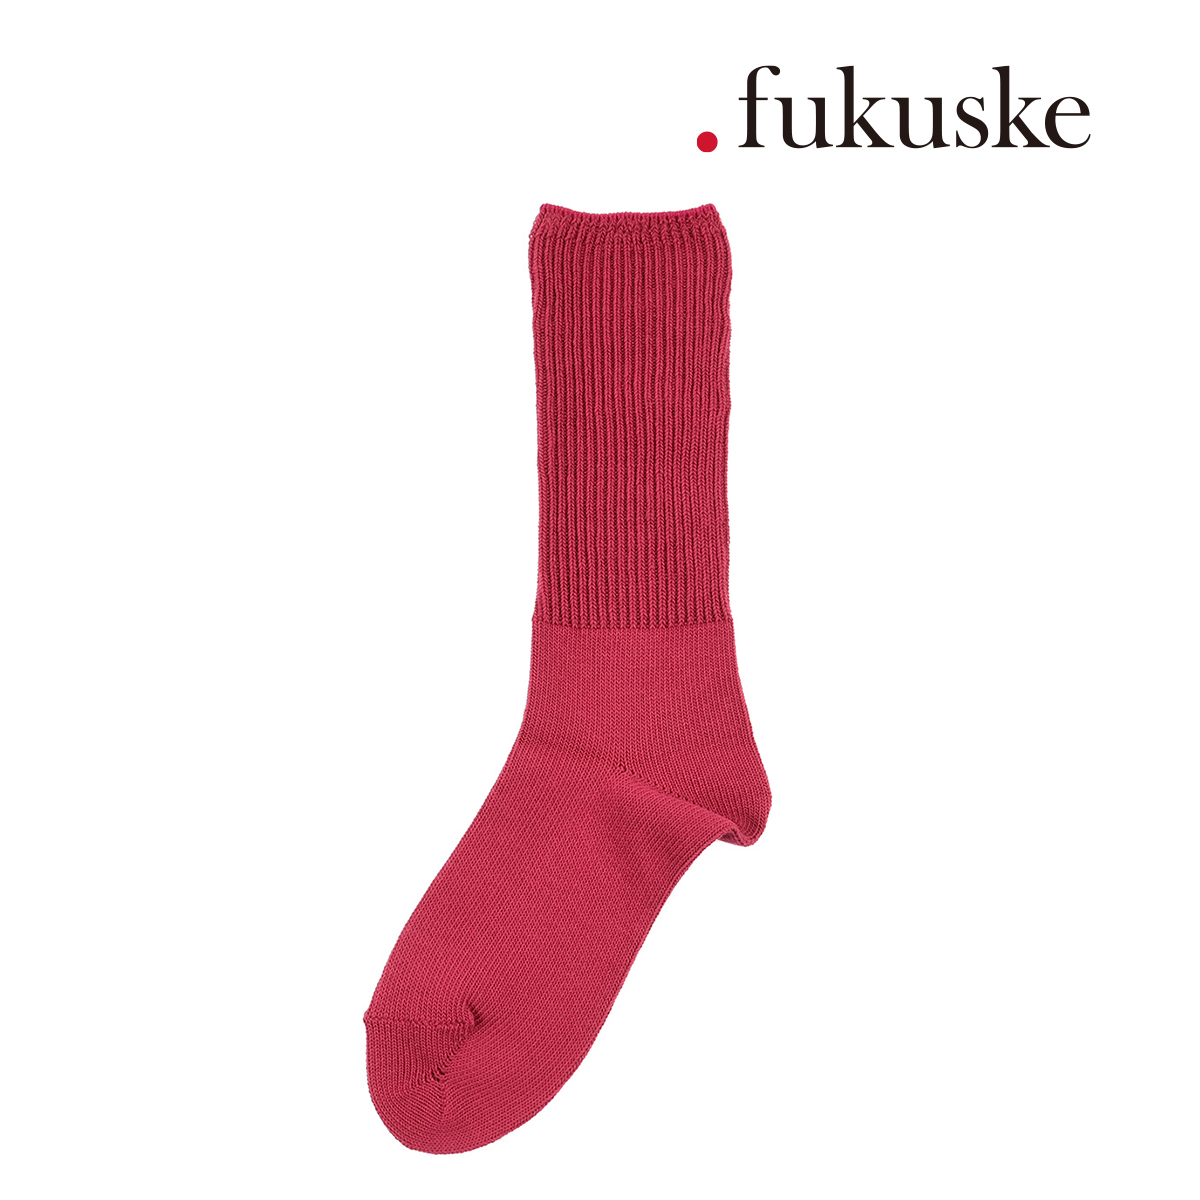 靴下 レディース fukuske (ドットフクスケ) ローゲージふっくら レッグ部分 1:1リブ クルー丈 00s3j010 婦人 女性 フクスケ  fukuske 福助 公式 :97-00s3j010:福助公式オンラインストア 通販 